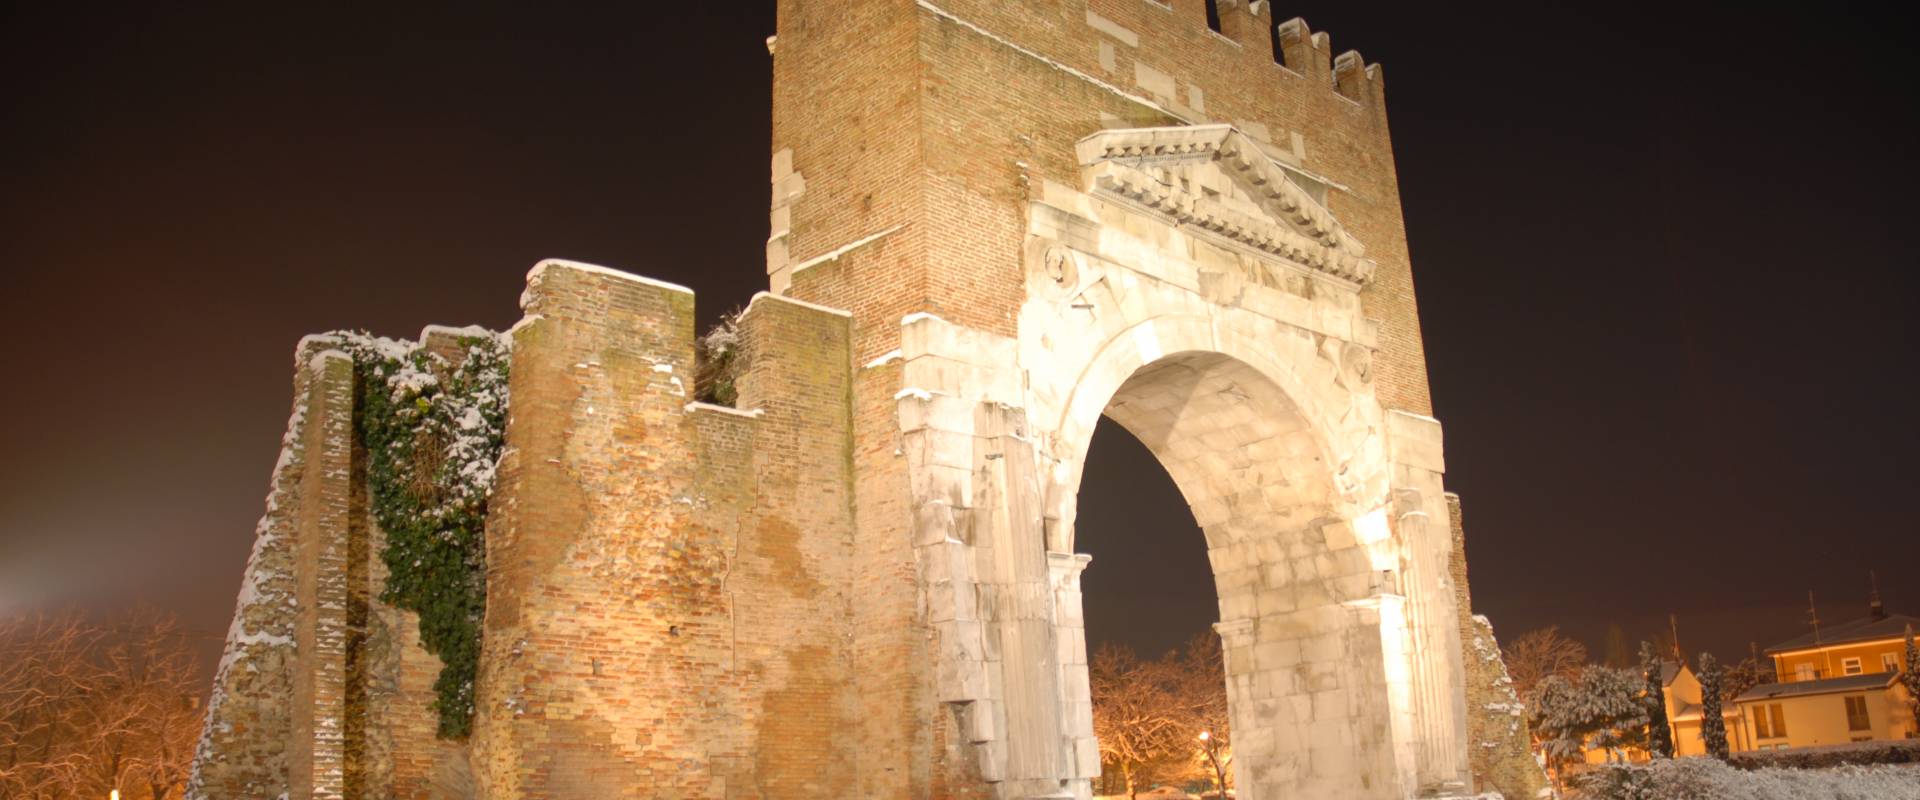 Arco di Augusto innevato foto di GianlucaMoretti